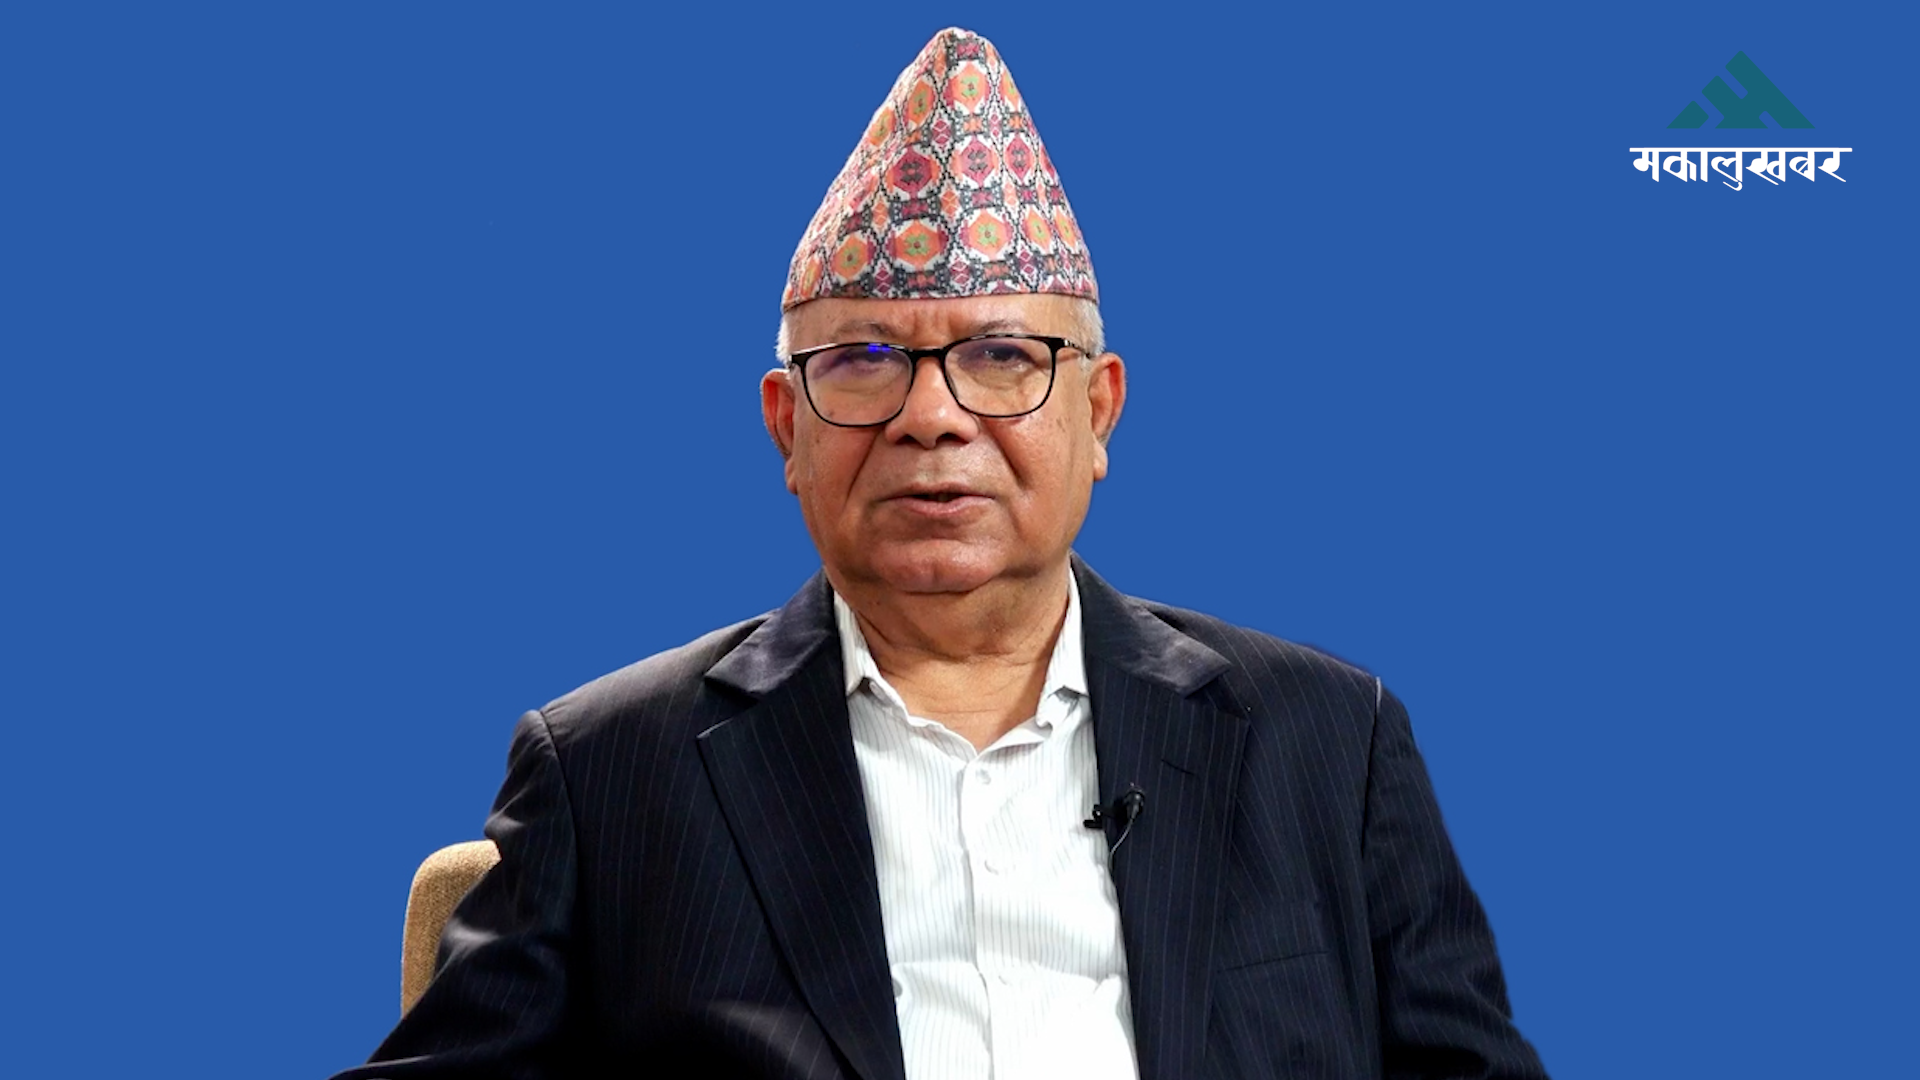 समाज परिवर्तनको जिम्मेवारी कम्युनिष्टहरुकै काँधमा छ : माधव नेपाल